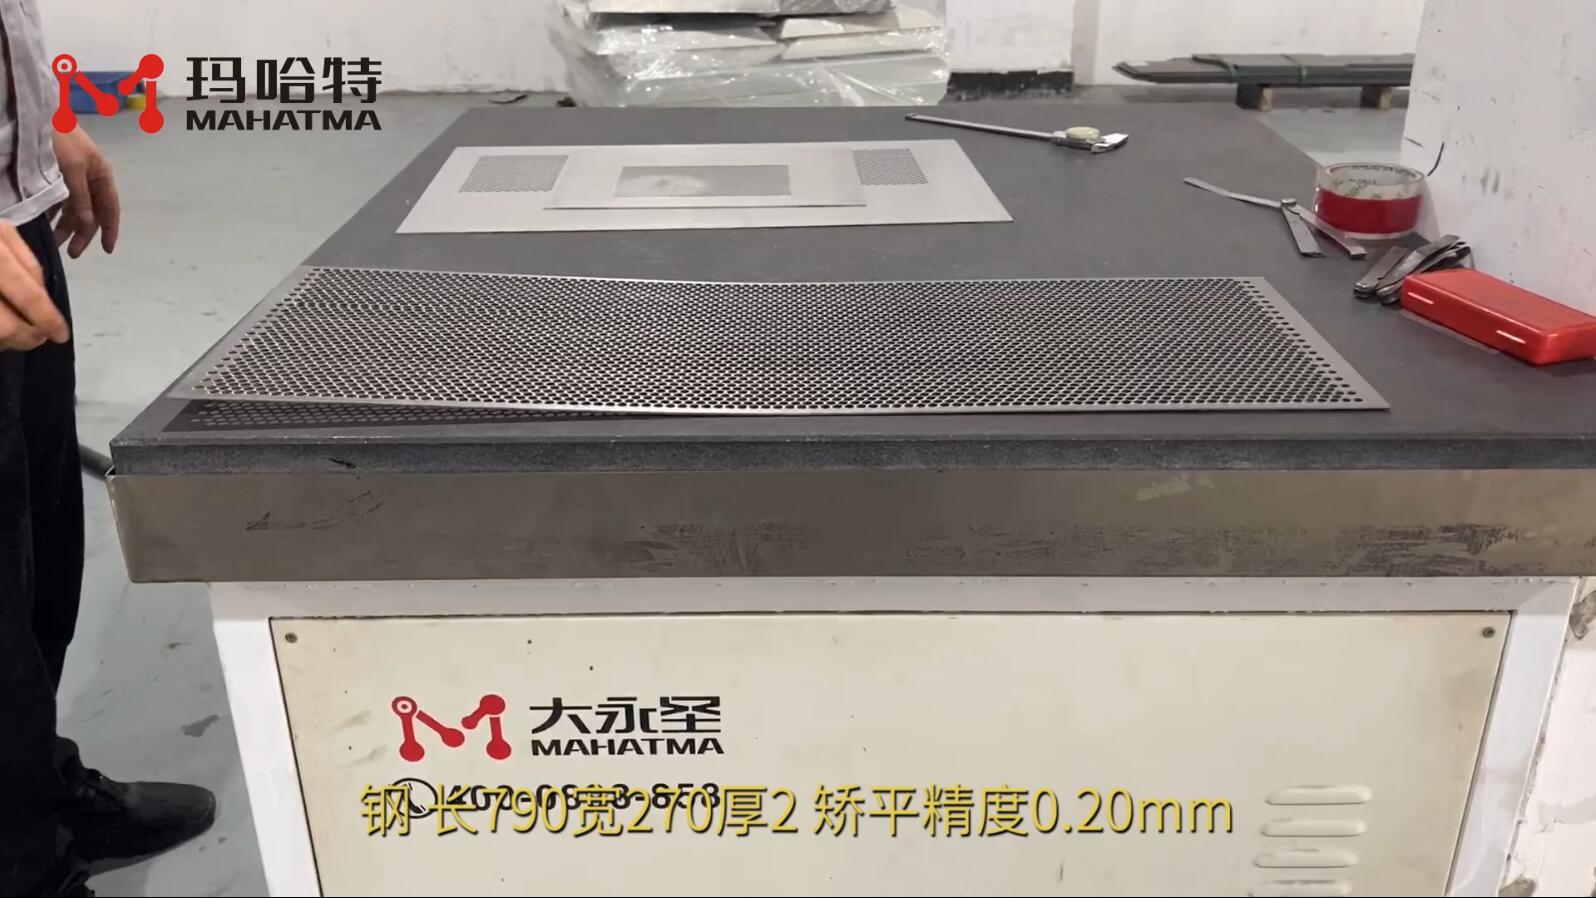 钢网板 MHT50-1300 长方形 长700宽270厚2 矫平精度0.20mm